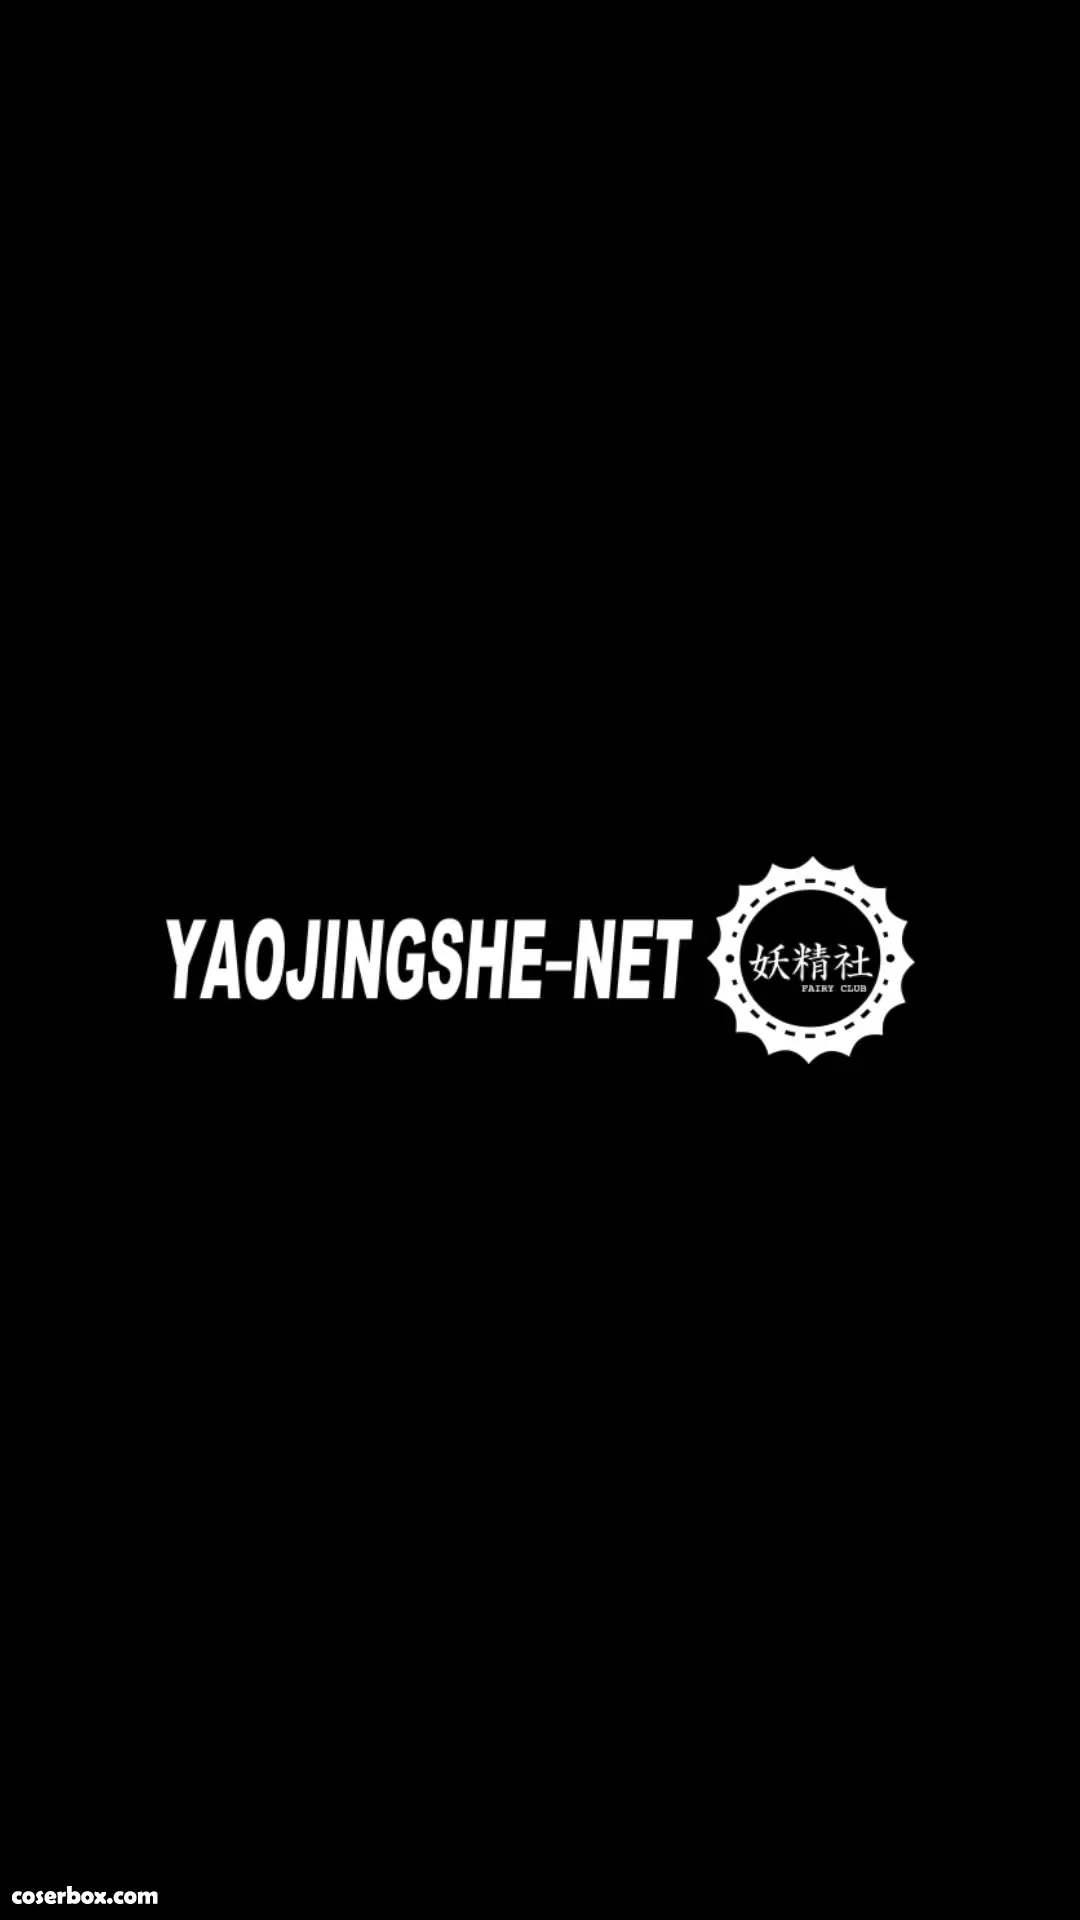 FAIRY CLUB妖精社 视频 H2104《苏伟&喵喵-2021光影新年》 [1P 1V 476.85MB] - 在线看可下载原图